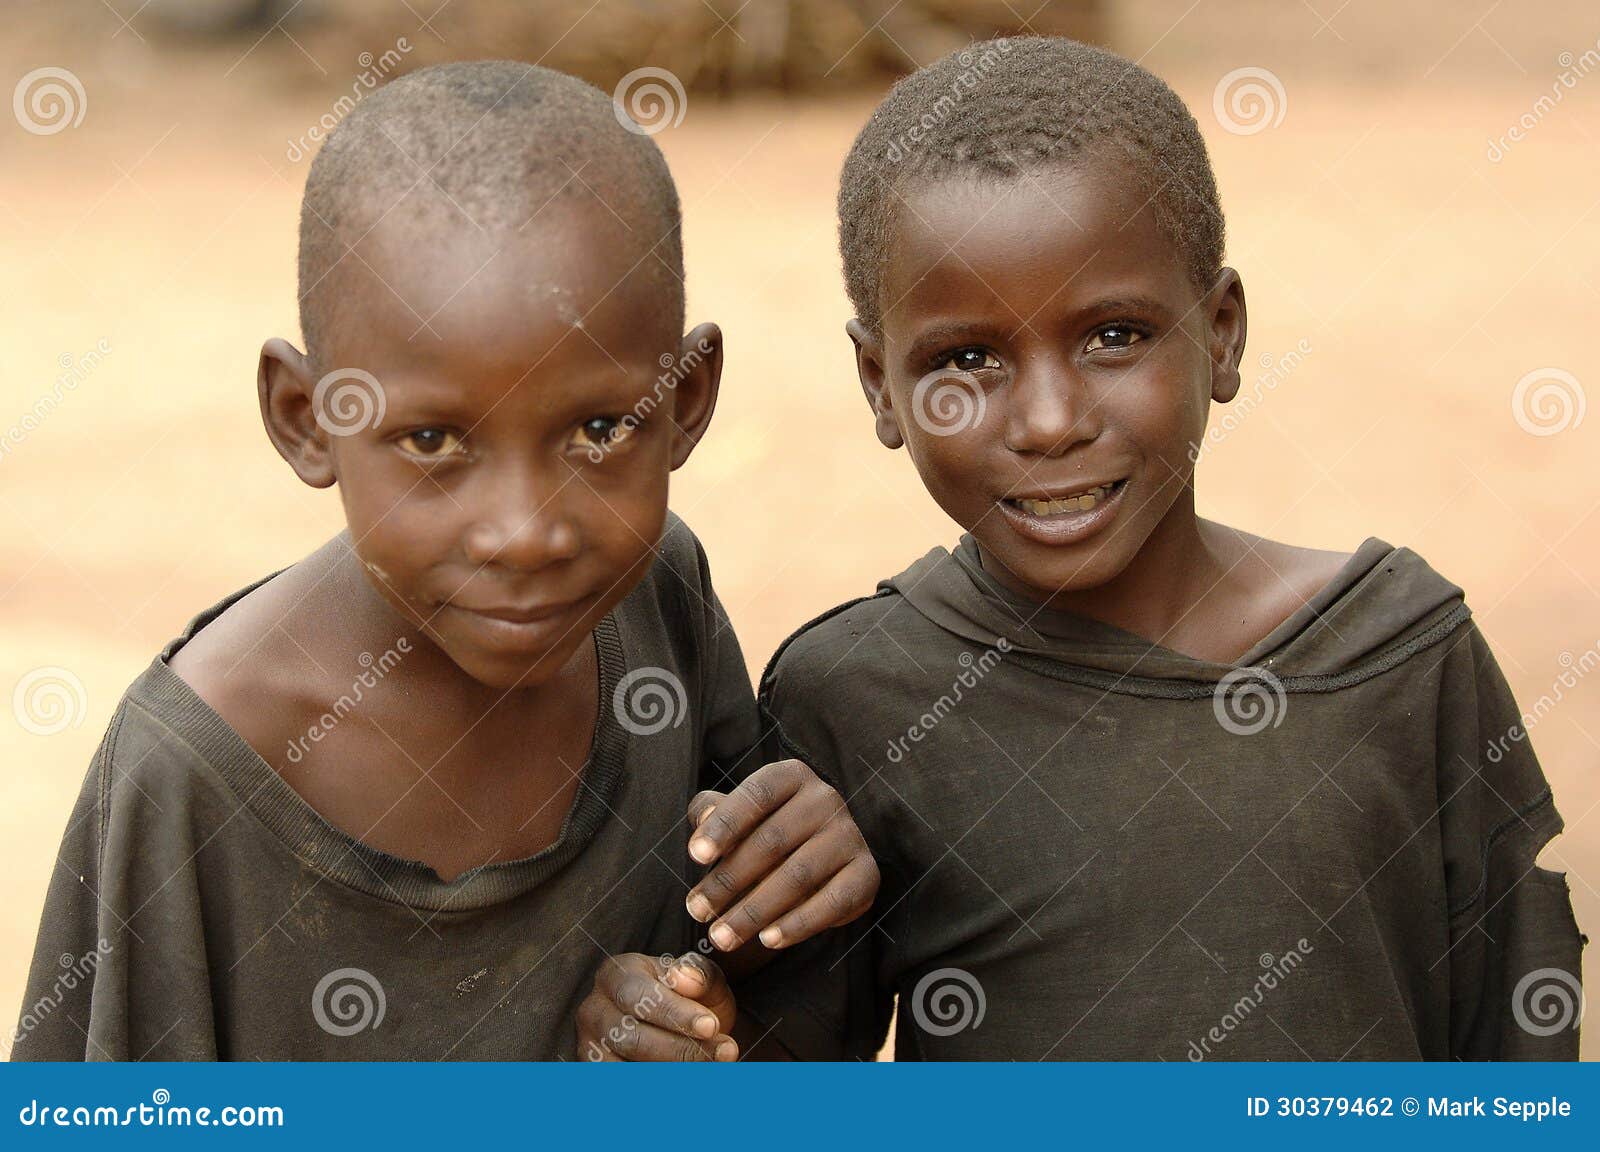 非洲男孩頭像, 動畫片, 微笑, 笑瞇瞇向量圖案素材免費下載，PNG，EPS和AI素材下載 - Pngtree